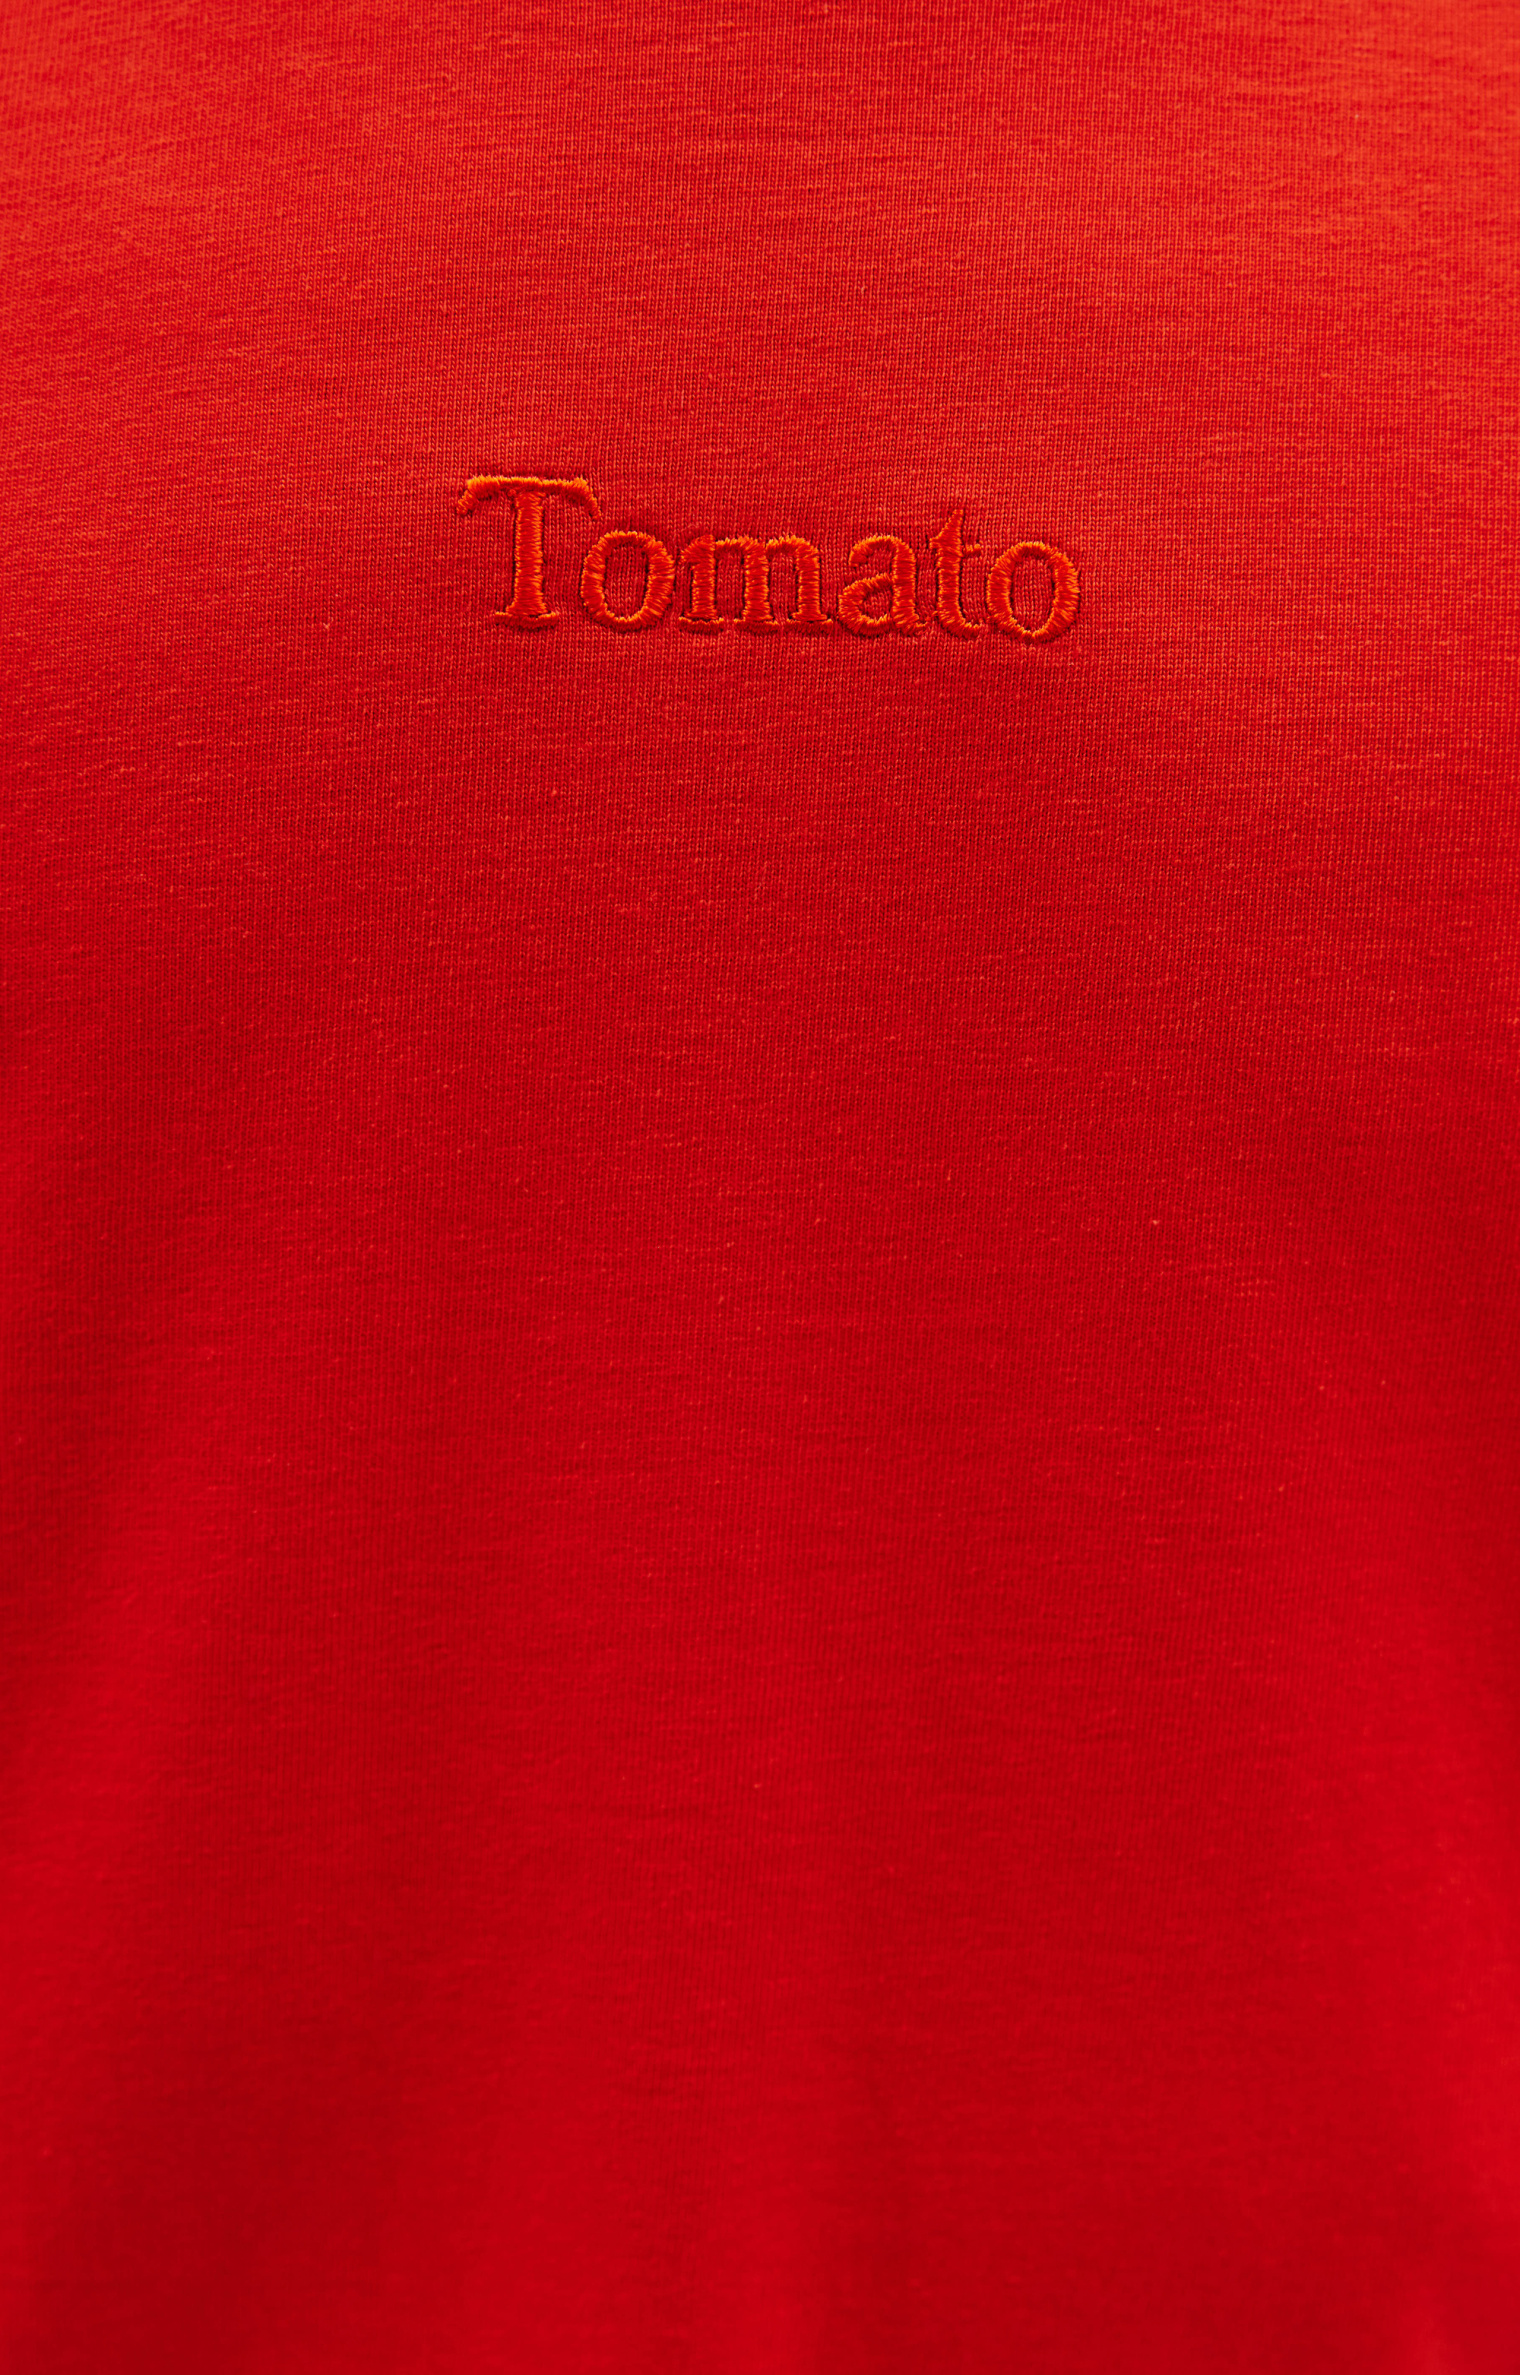 Doublet Футболка с вышивкой Tomato